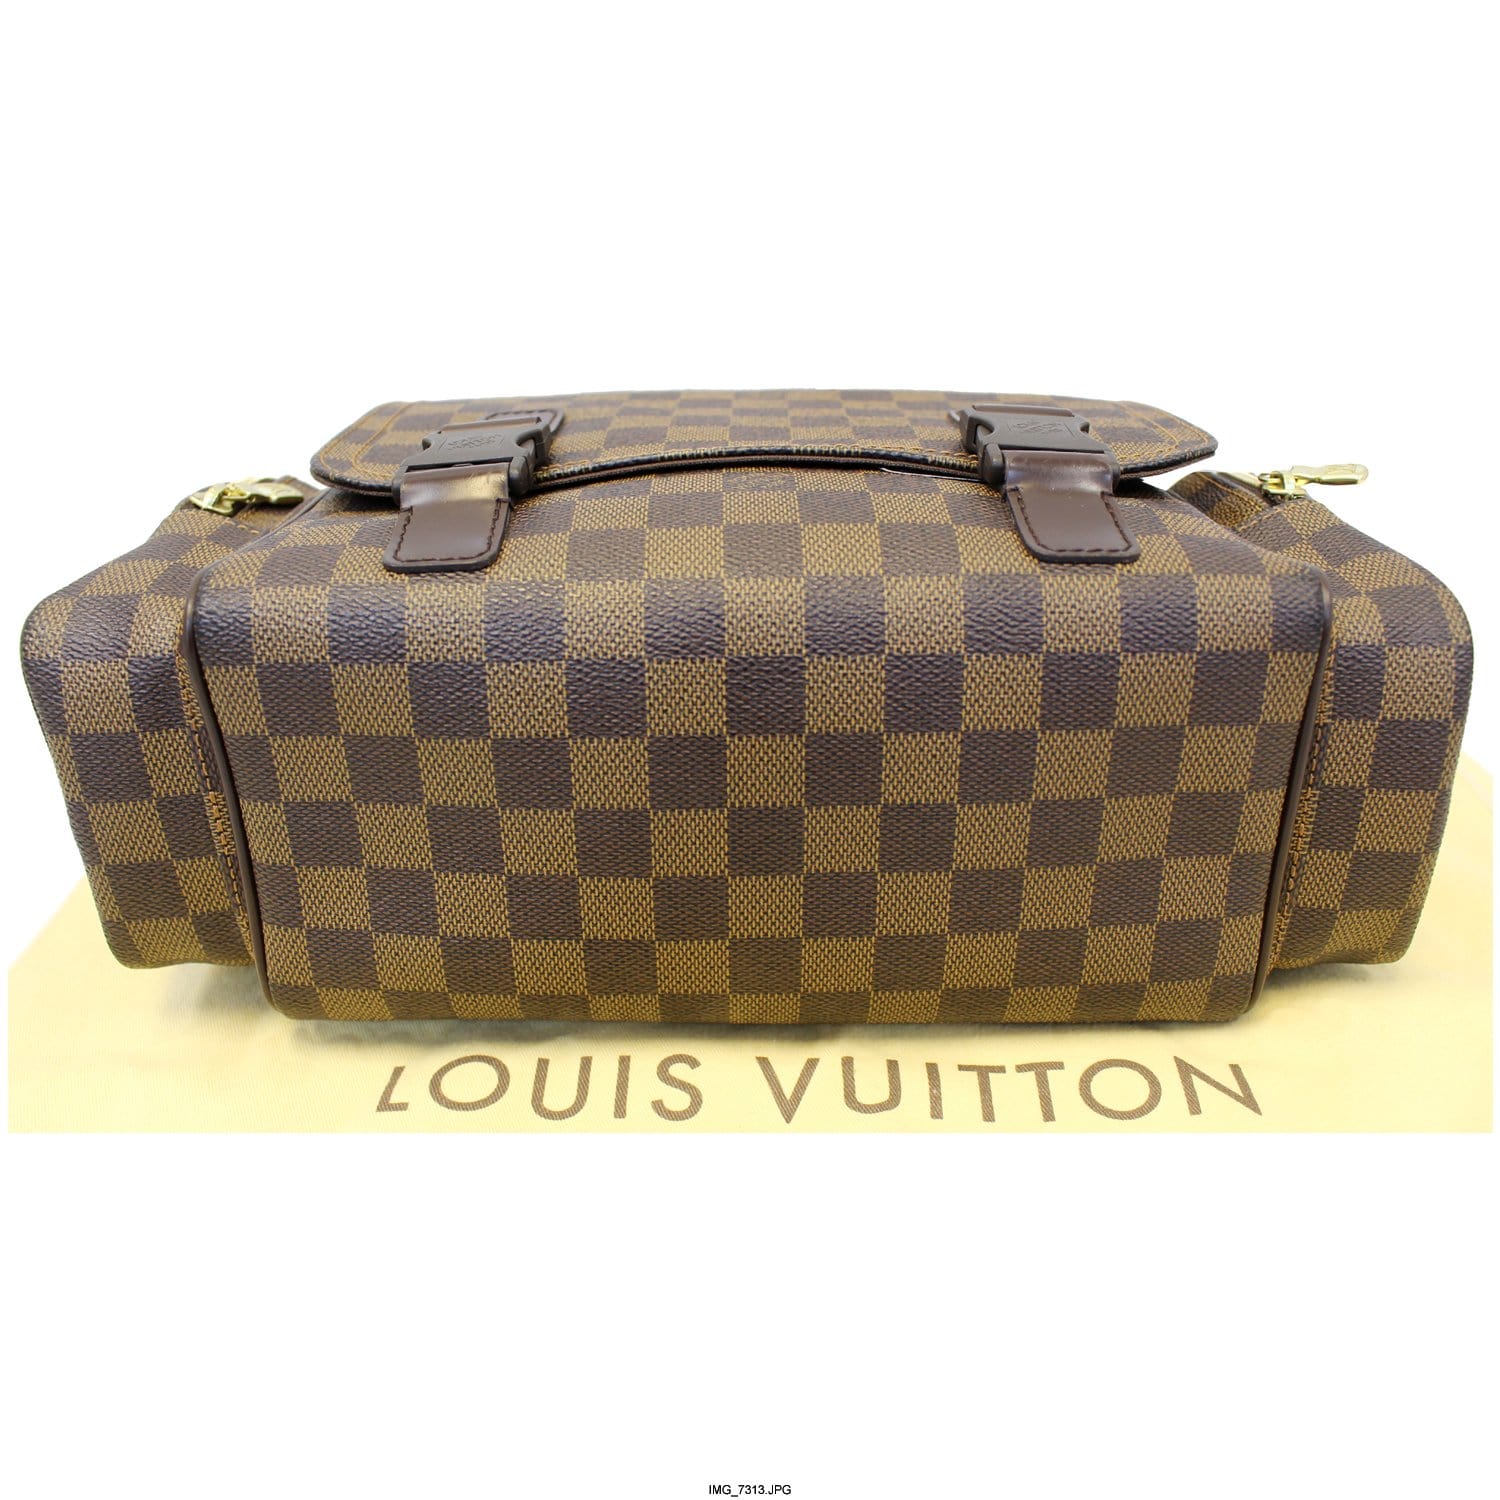 Louis Vuitton Louis Vuitton Reporter Melville Ebene Damier Canvas Bag